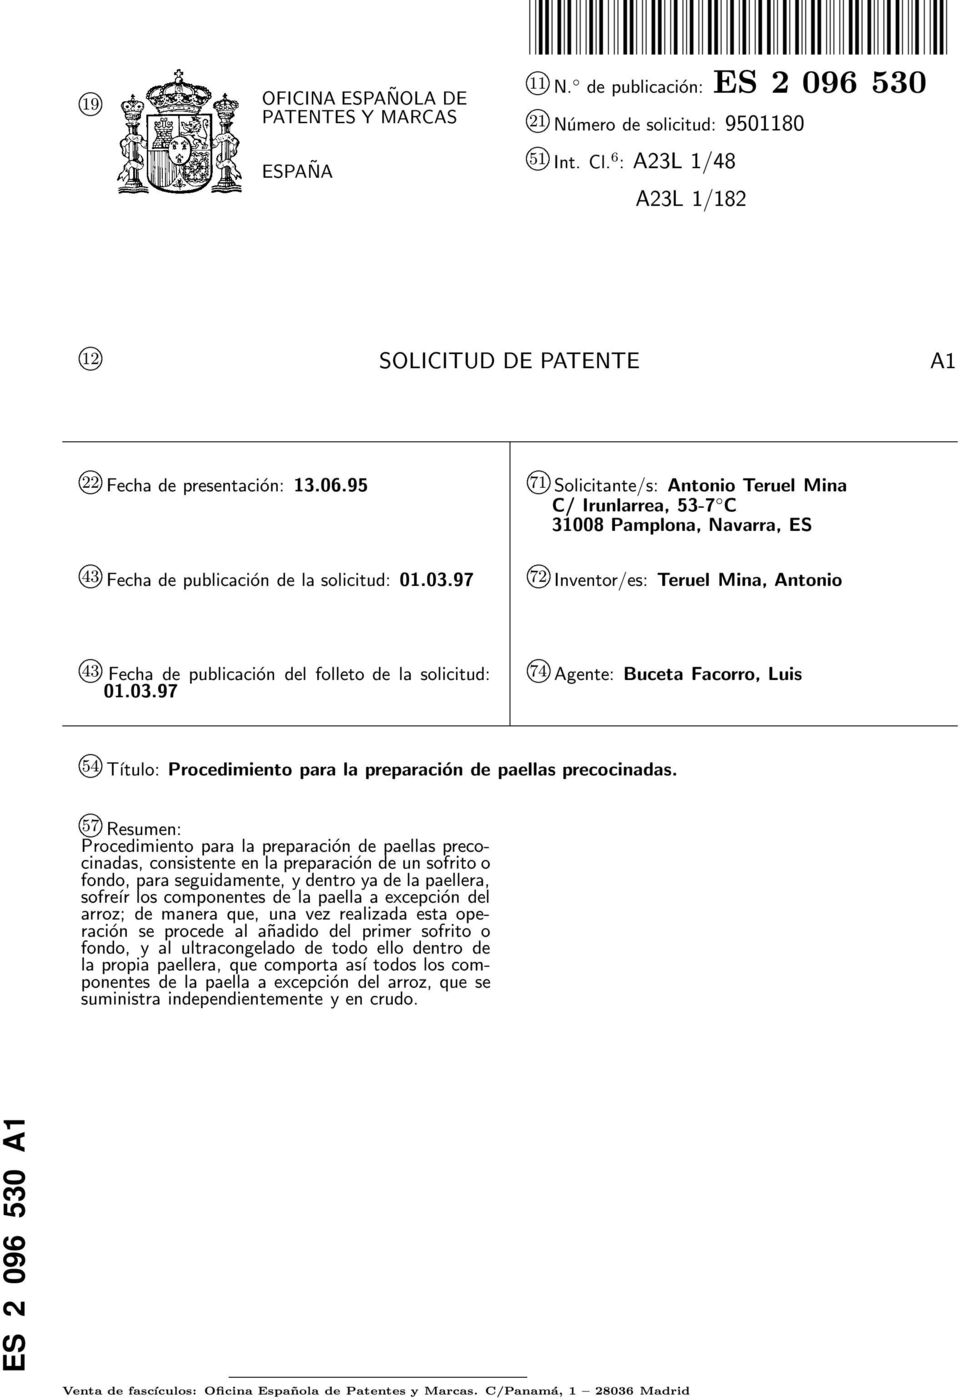 9 71 k Solicitante/s: Antonio Teruel Mina C/ Irunlarrea, 3-7 C 308 Pamplona, Navarra, ES k 43 Fecha de publicación de la solicitud: 01.03.